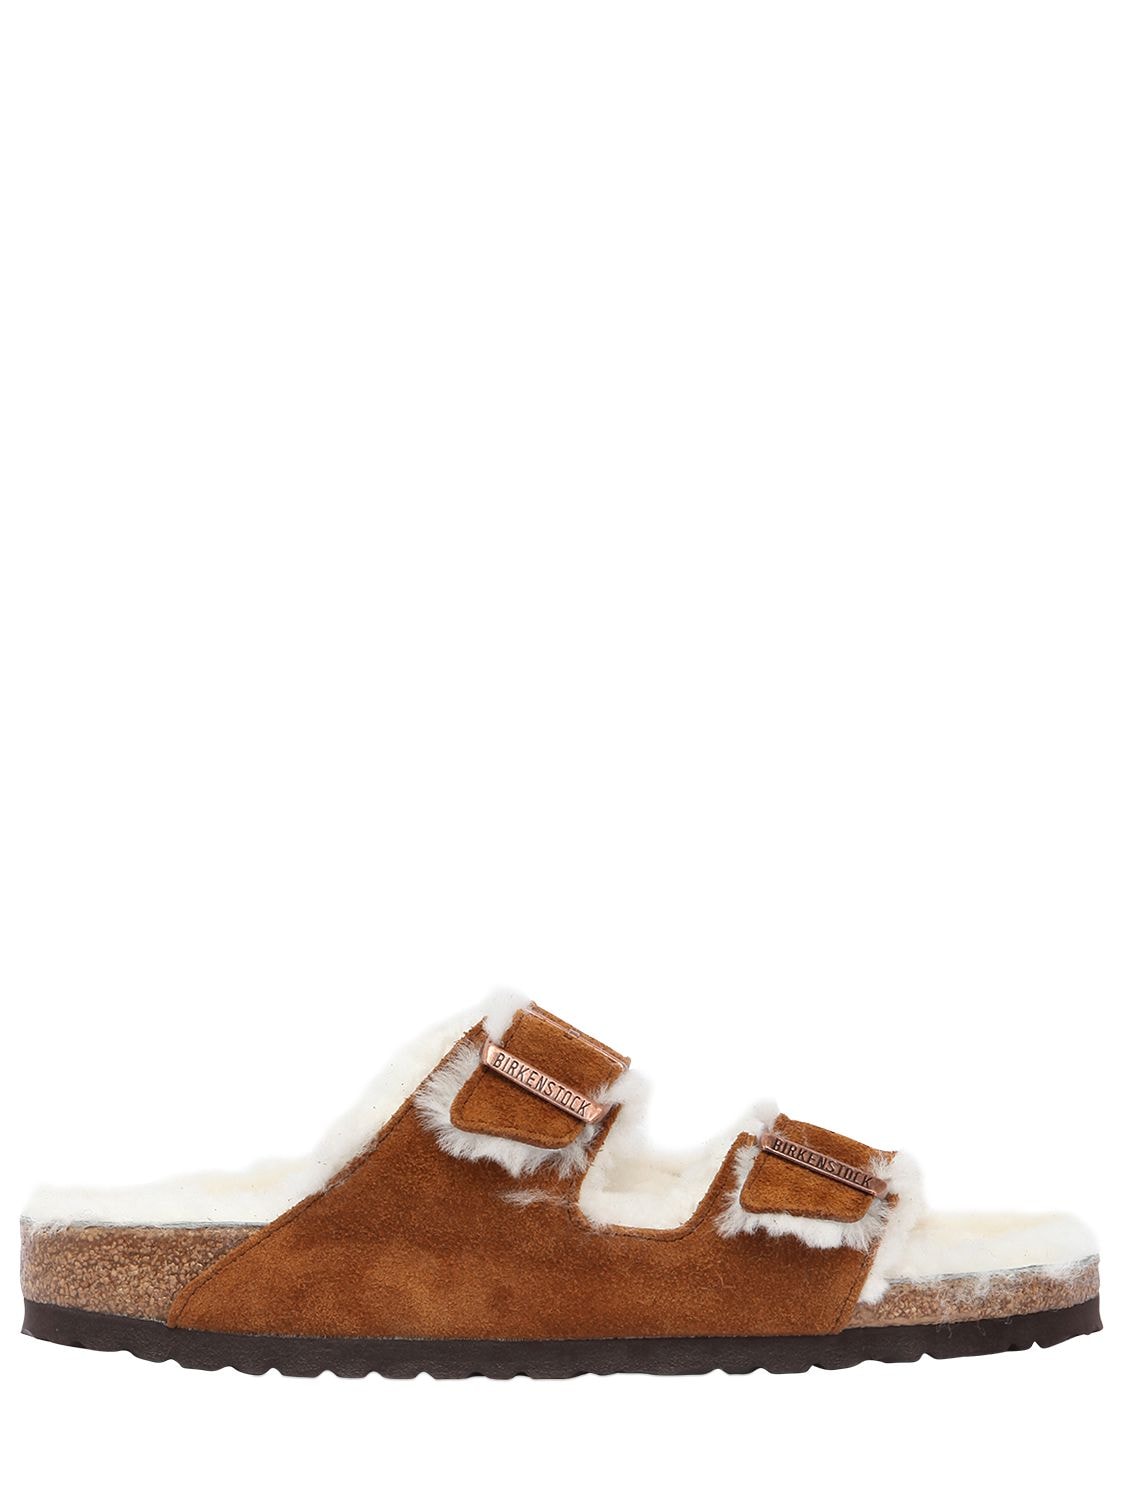 Birkenstock Arizona Shearling & Suede Slide Sandals In Light Brown ...